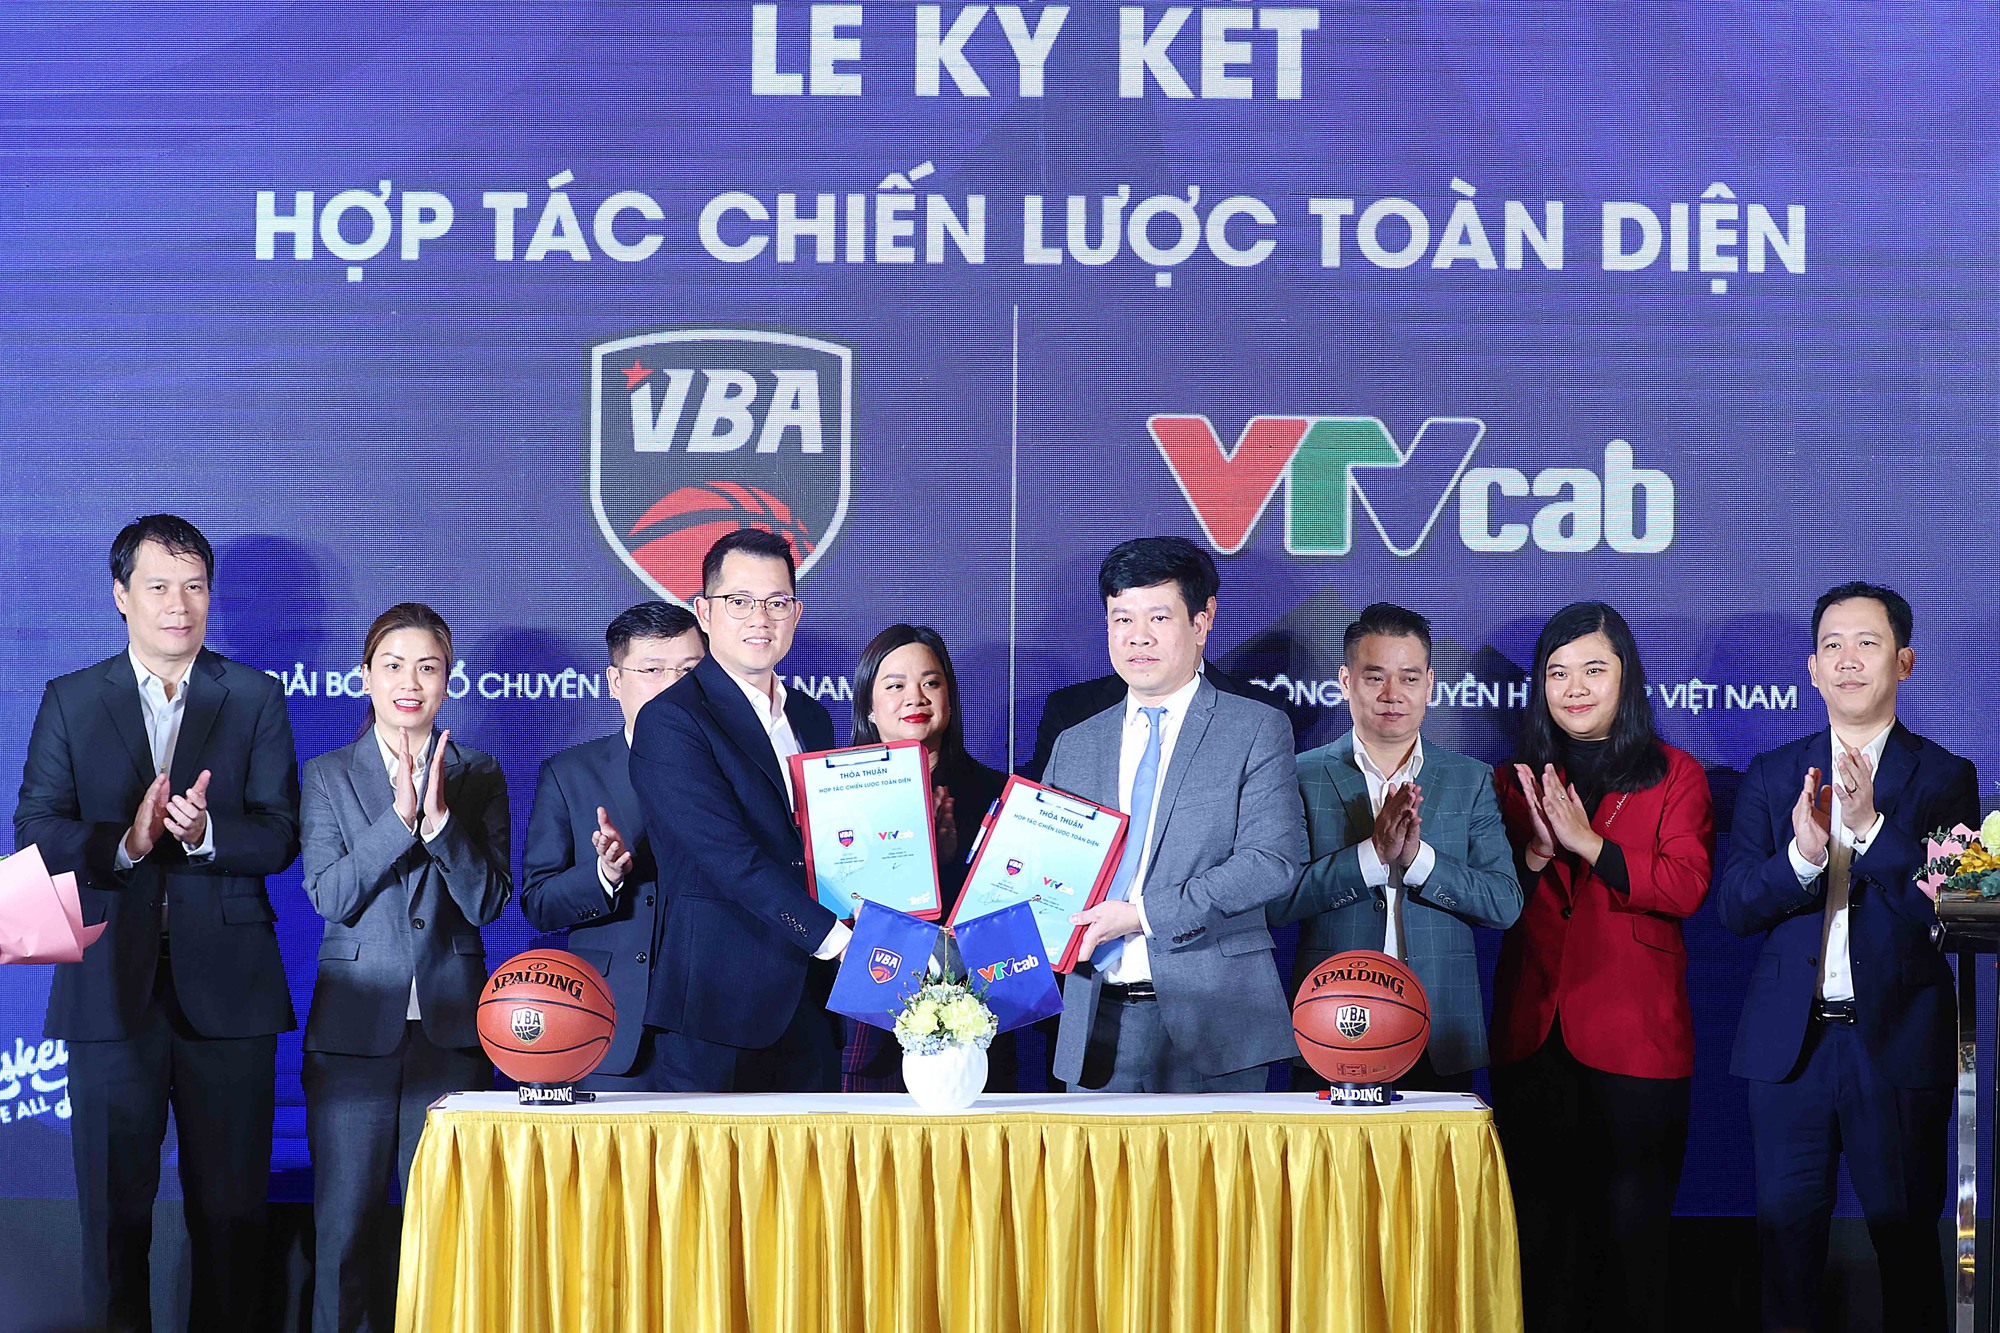 Thúc đẩy sự phát triển của bóng rổ Việt Nam - Ảnh 1.